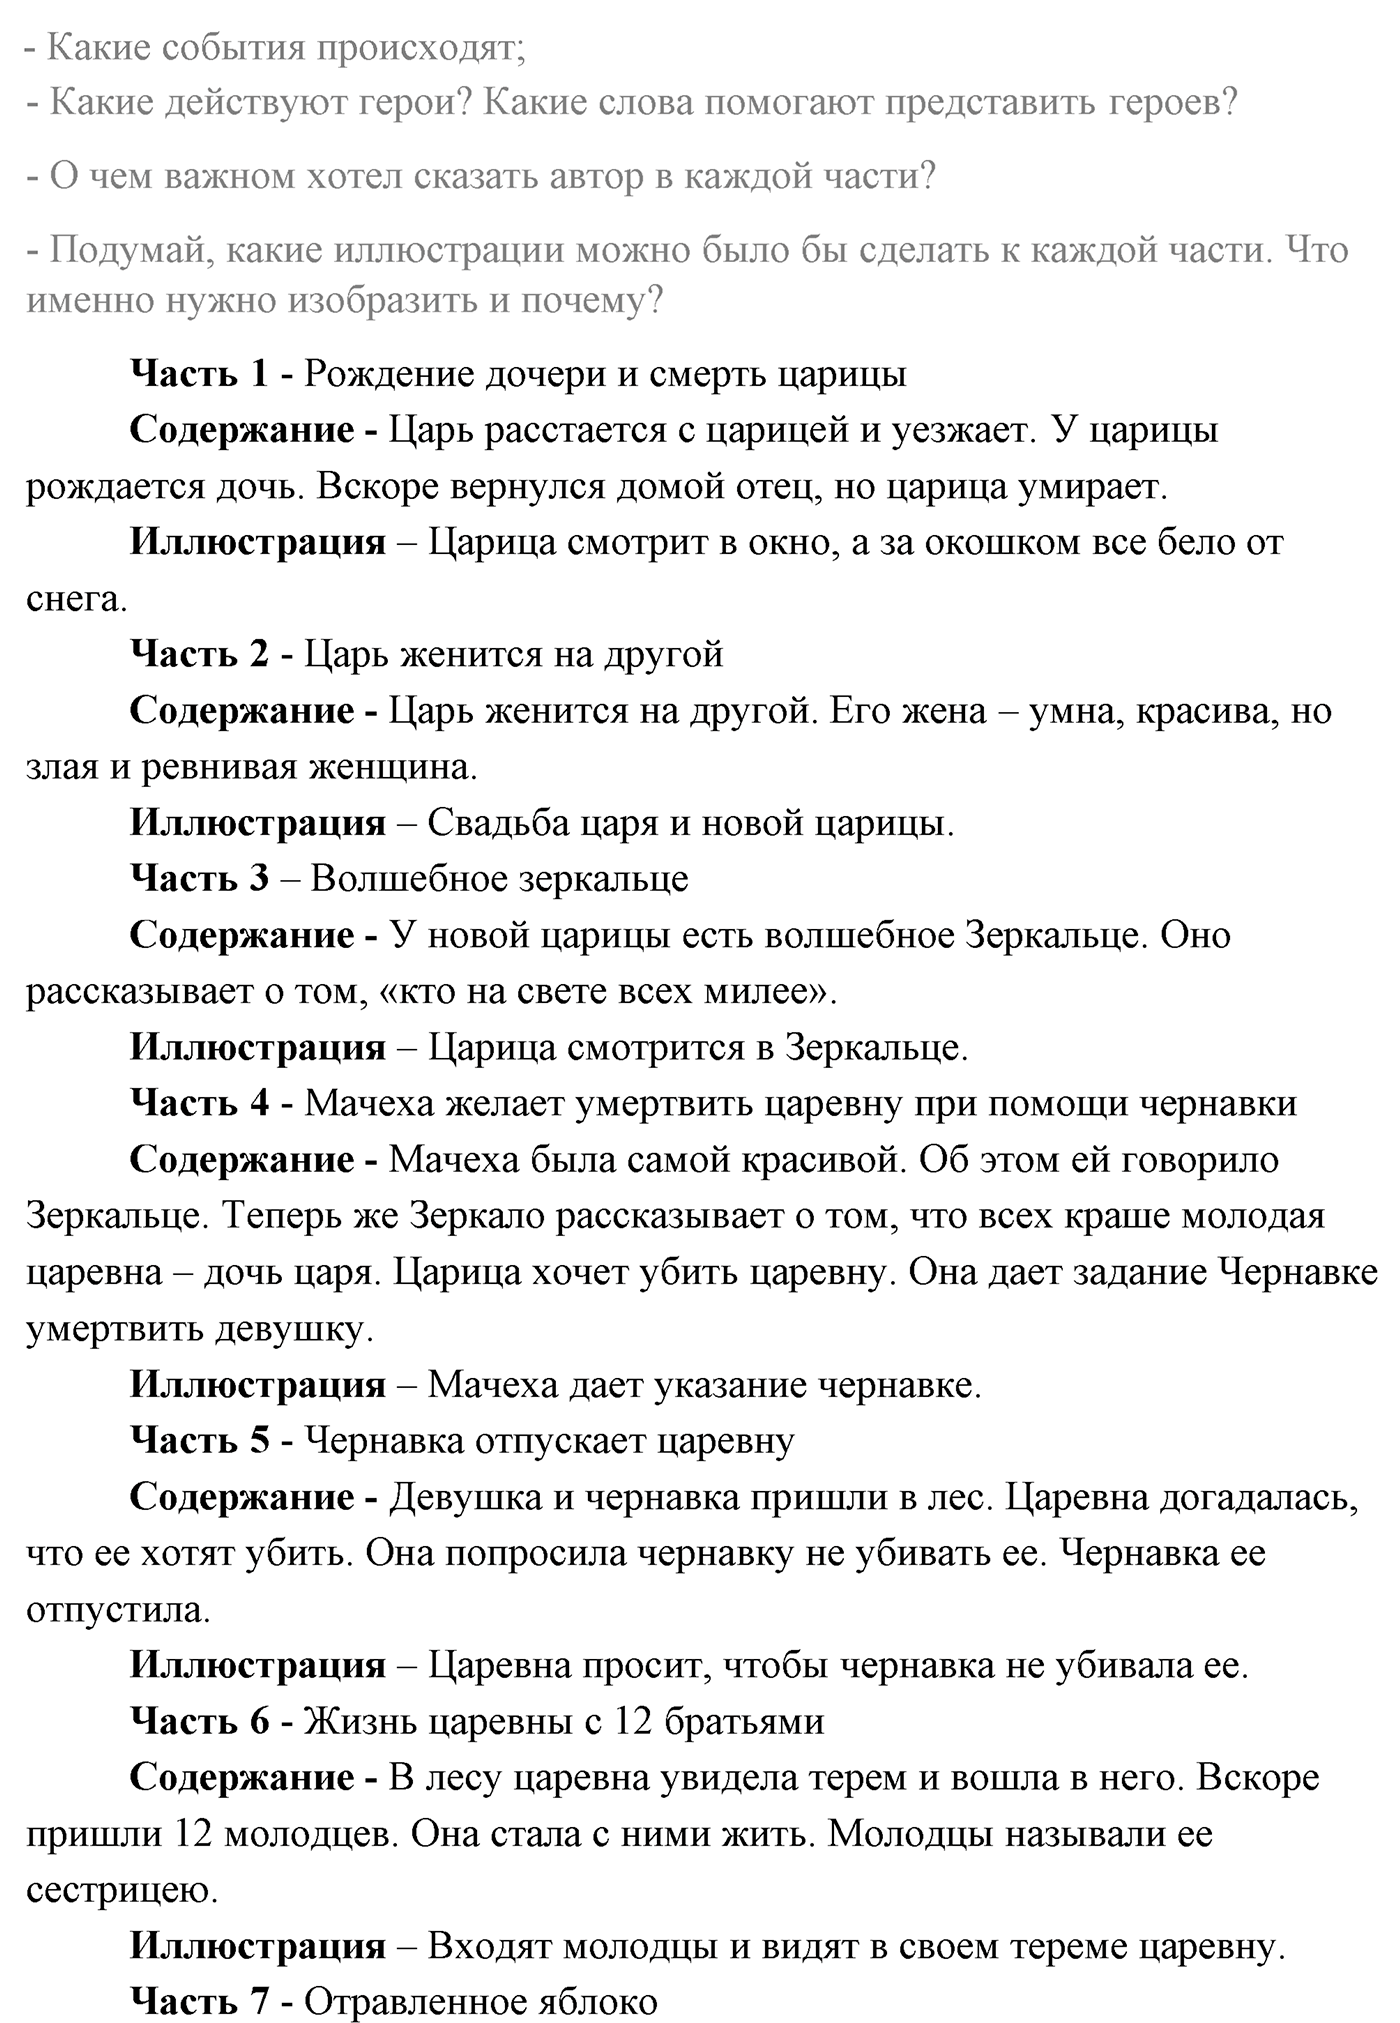 Часть 1 Страница 56 литературное чтение 4 класс Климанова, Горецкий, Голованова, Виноградская, Бойкина 2021 год